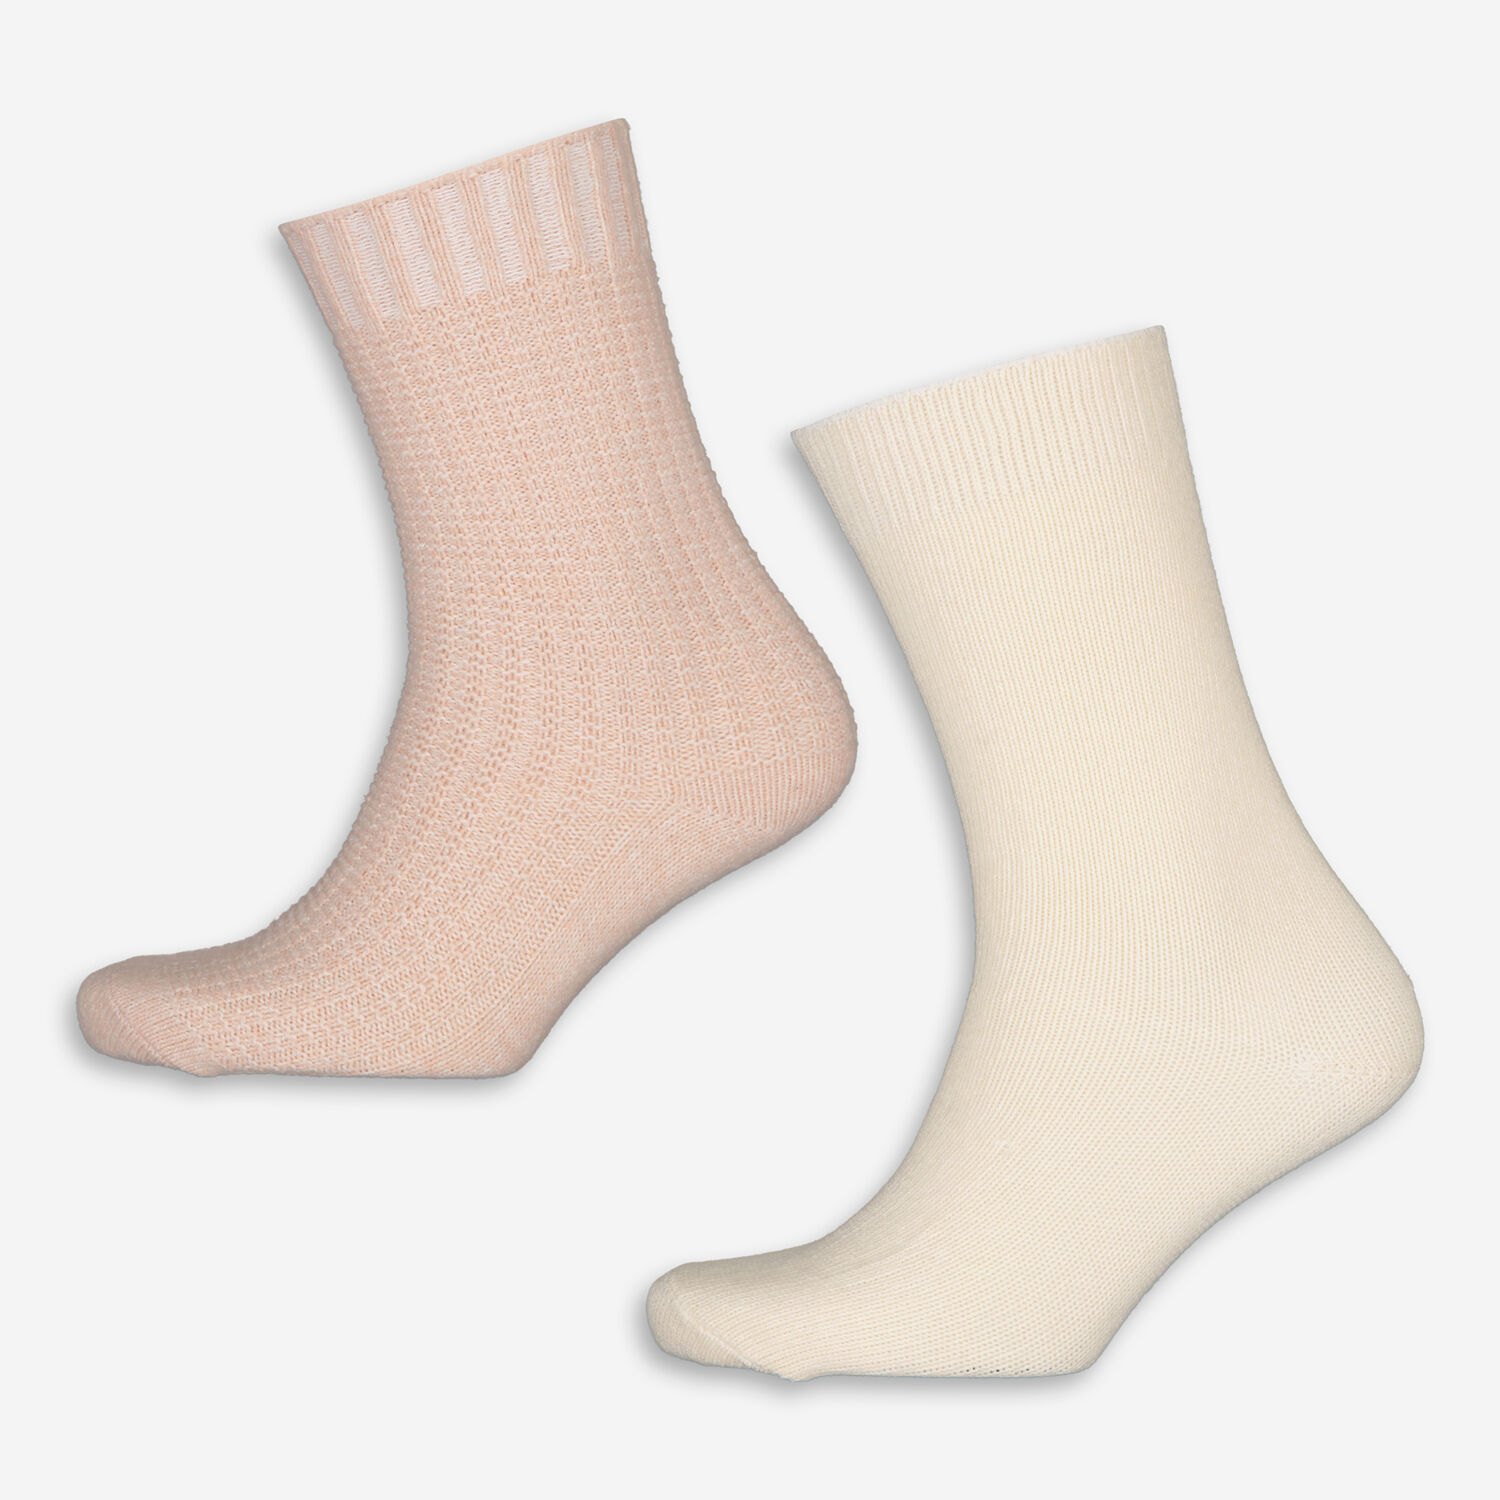 В упаковке 2 носка розового и кремового цвета Frye в упаковке 3 носка с рисунком h